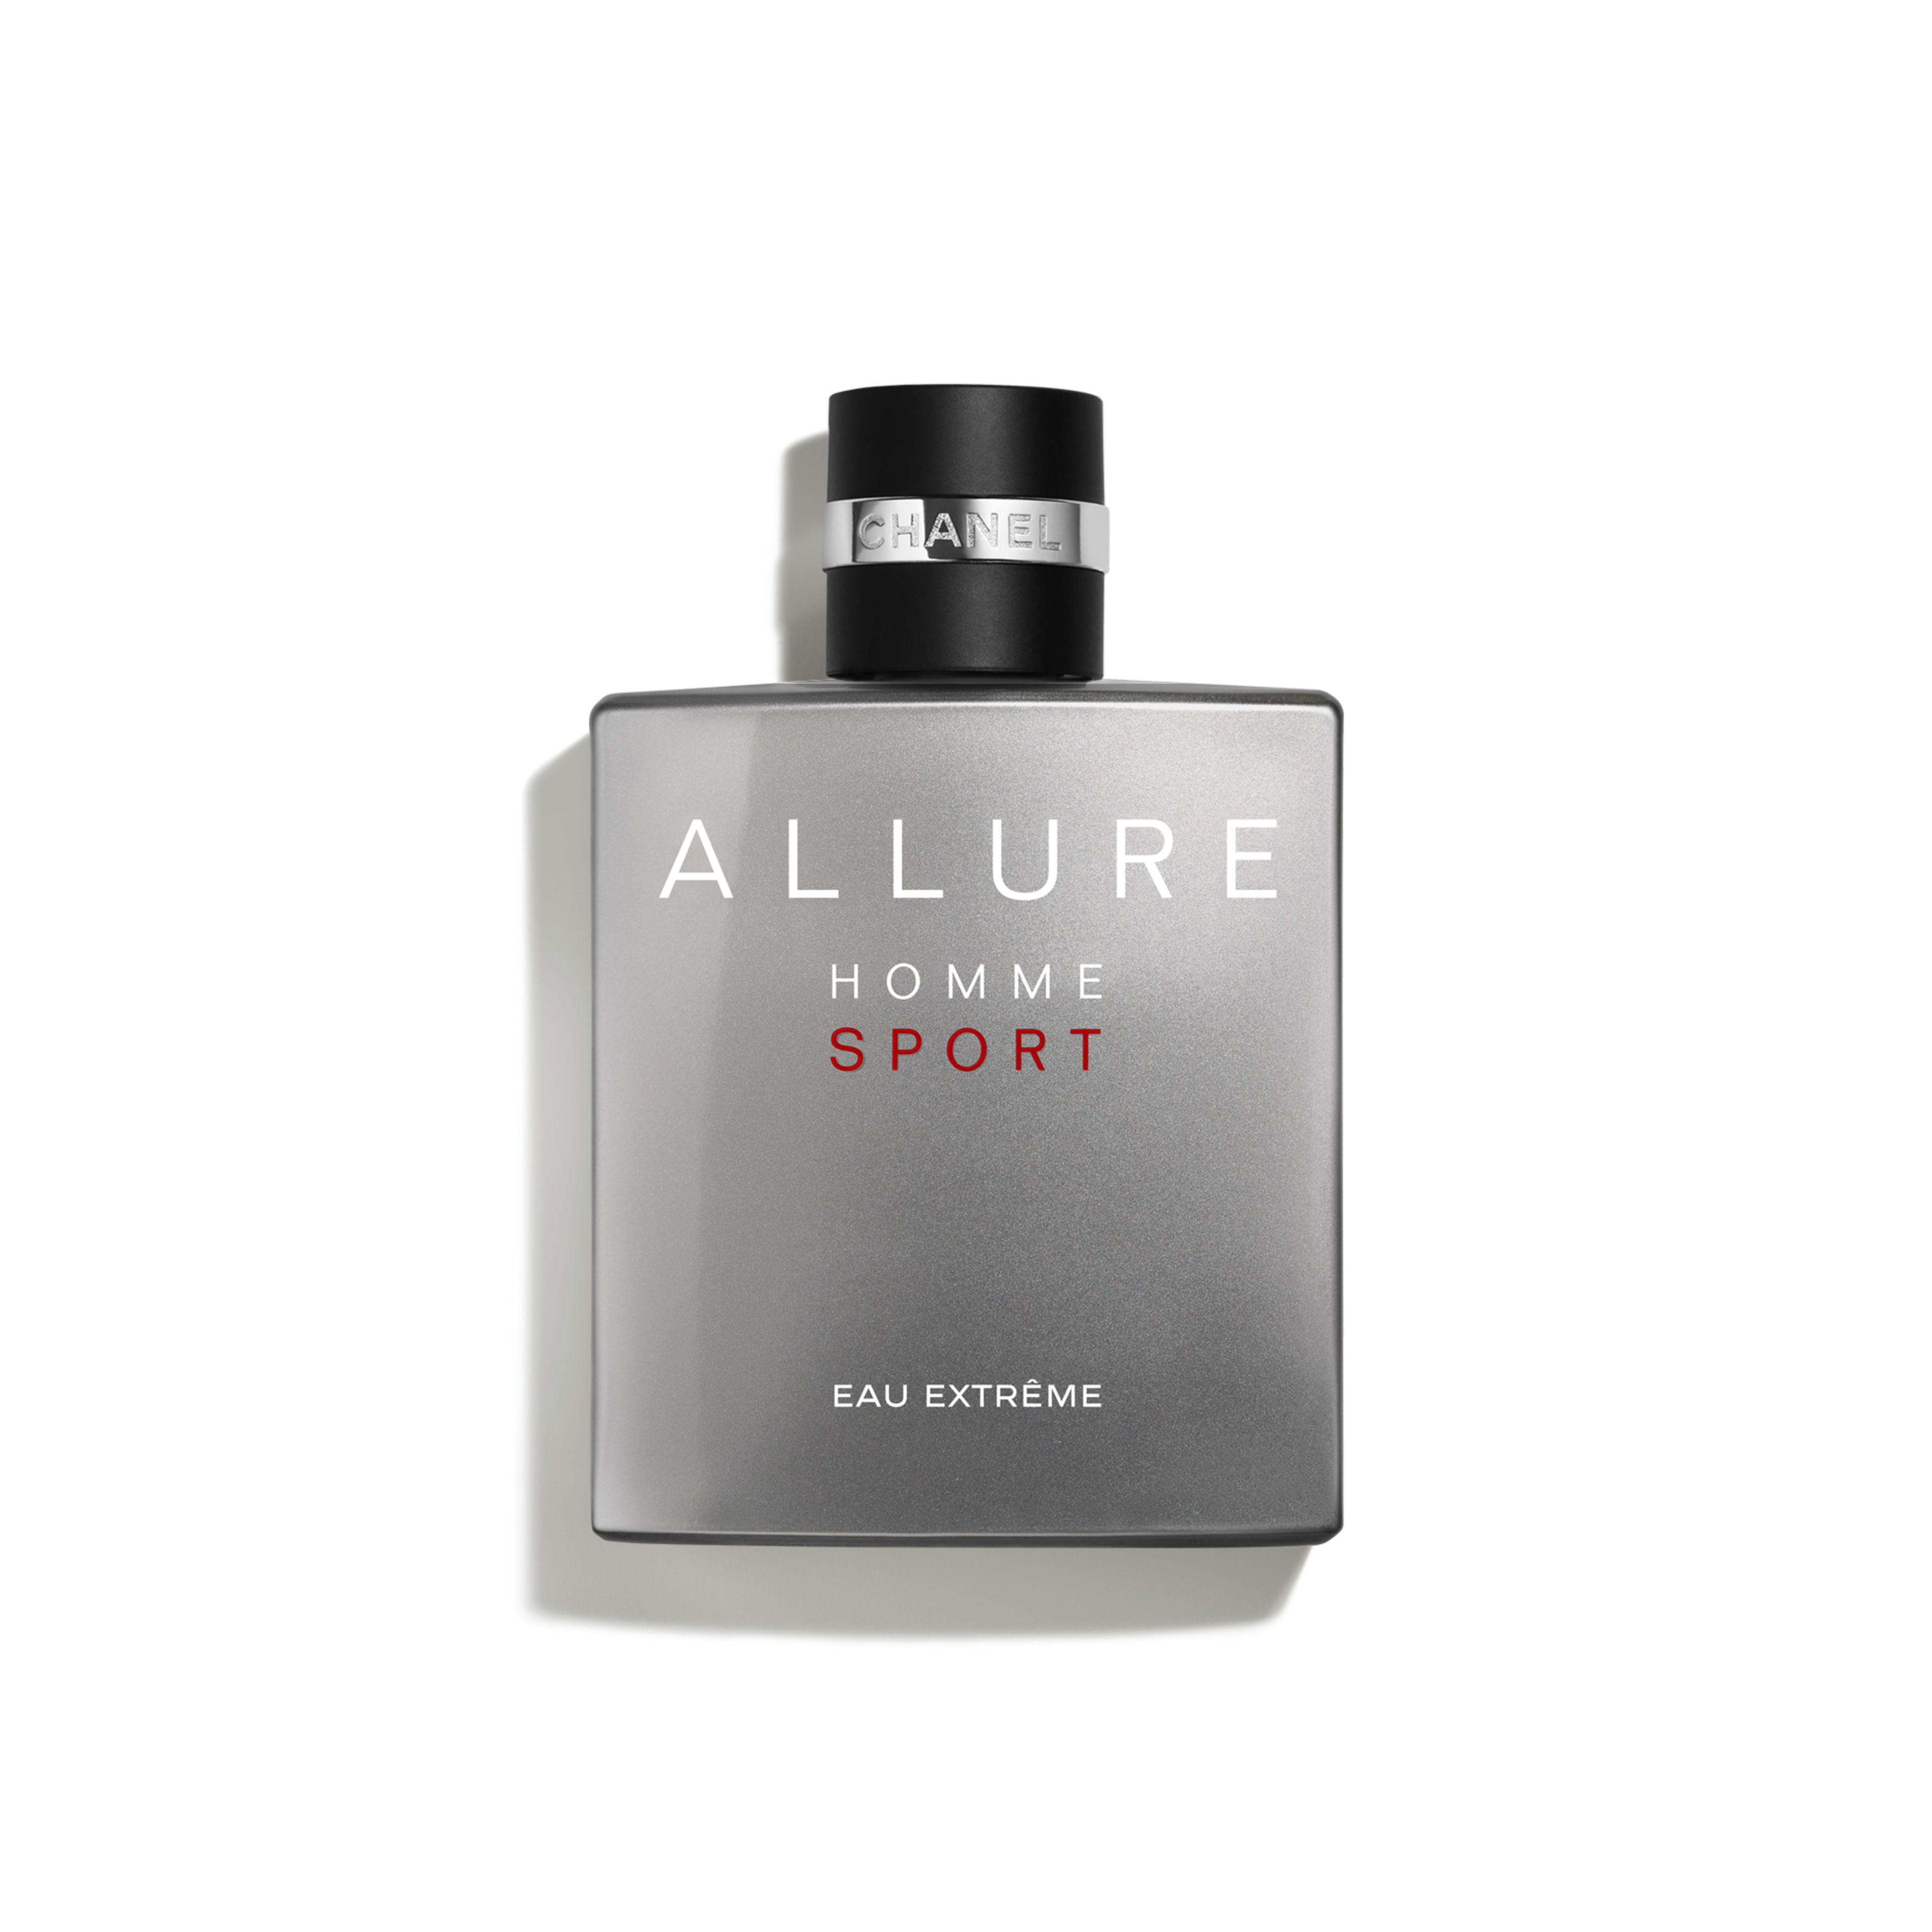 Chanel Allure Homme parfum